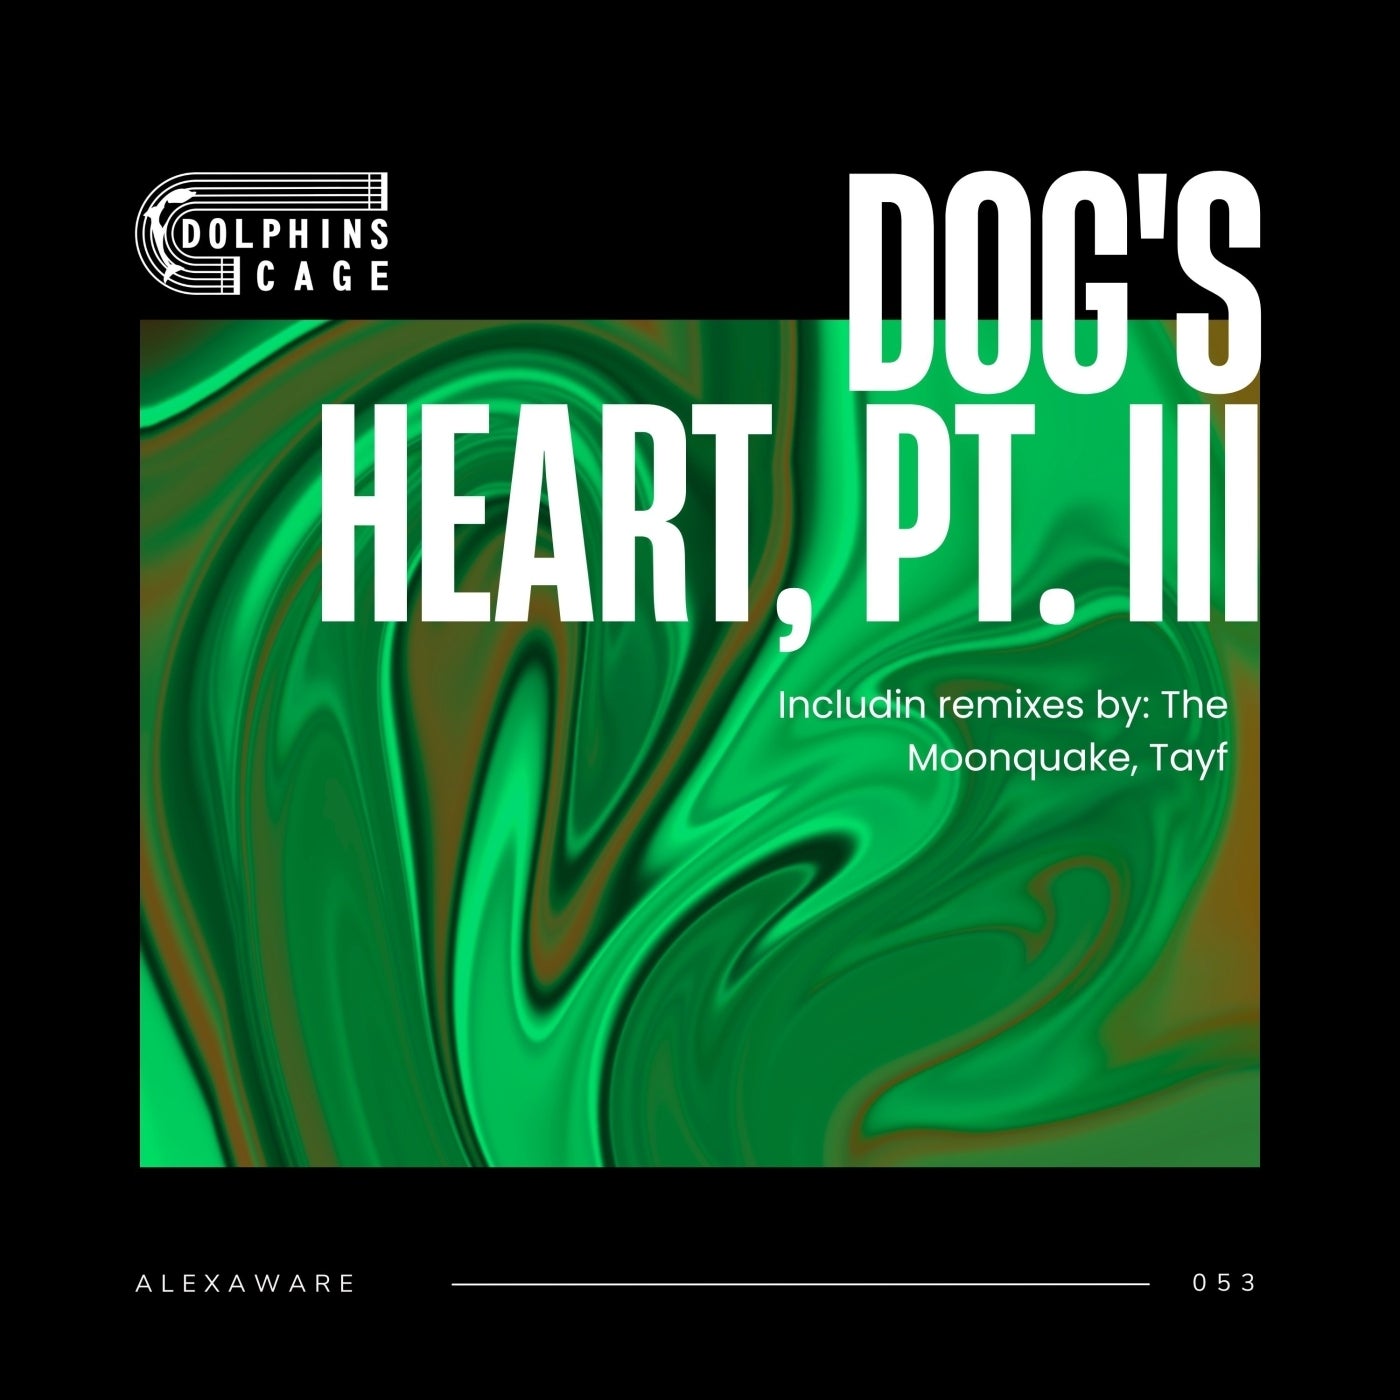 Dog's Heart, Pt. III